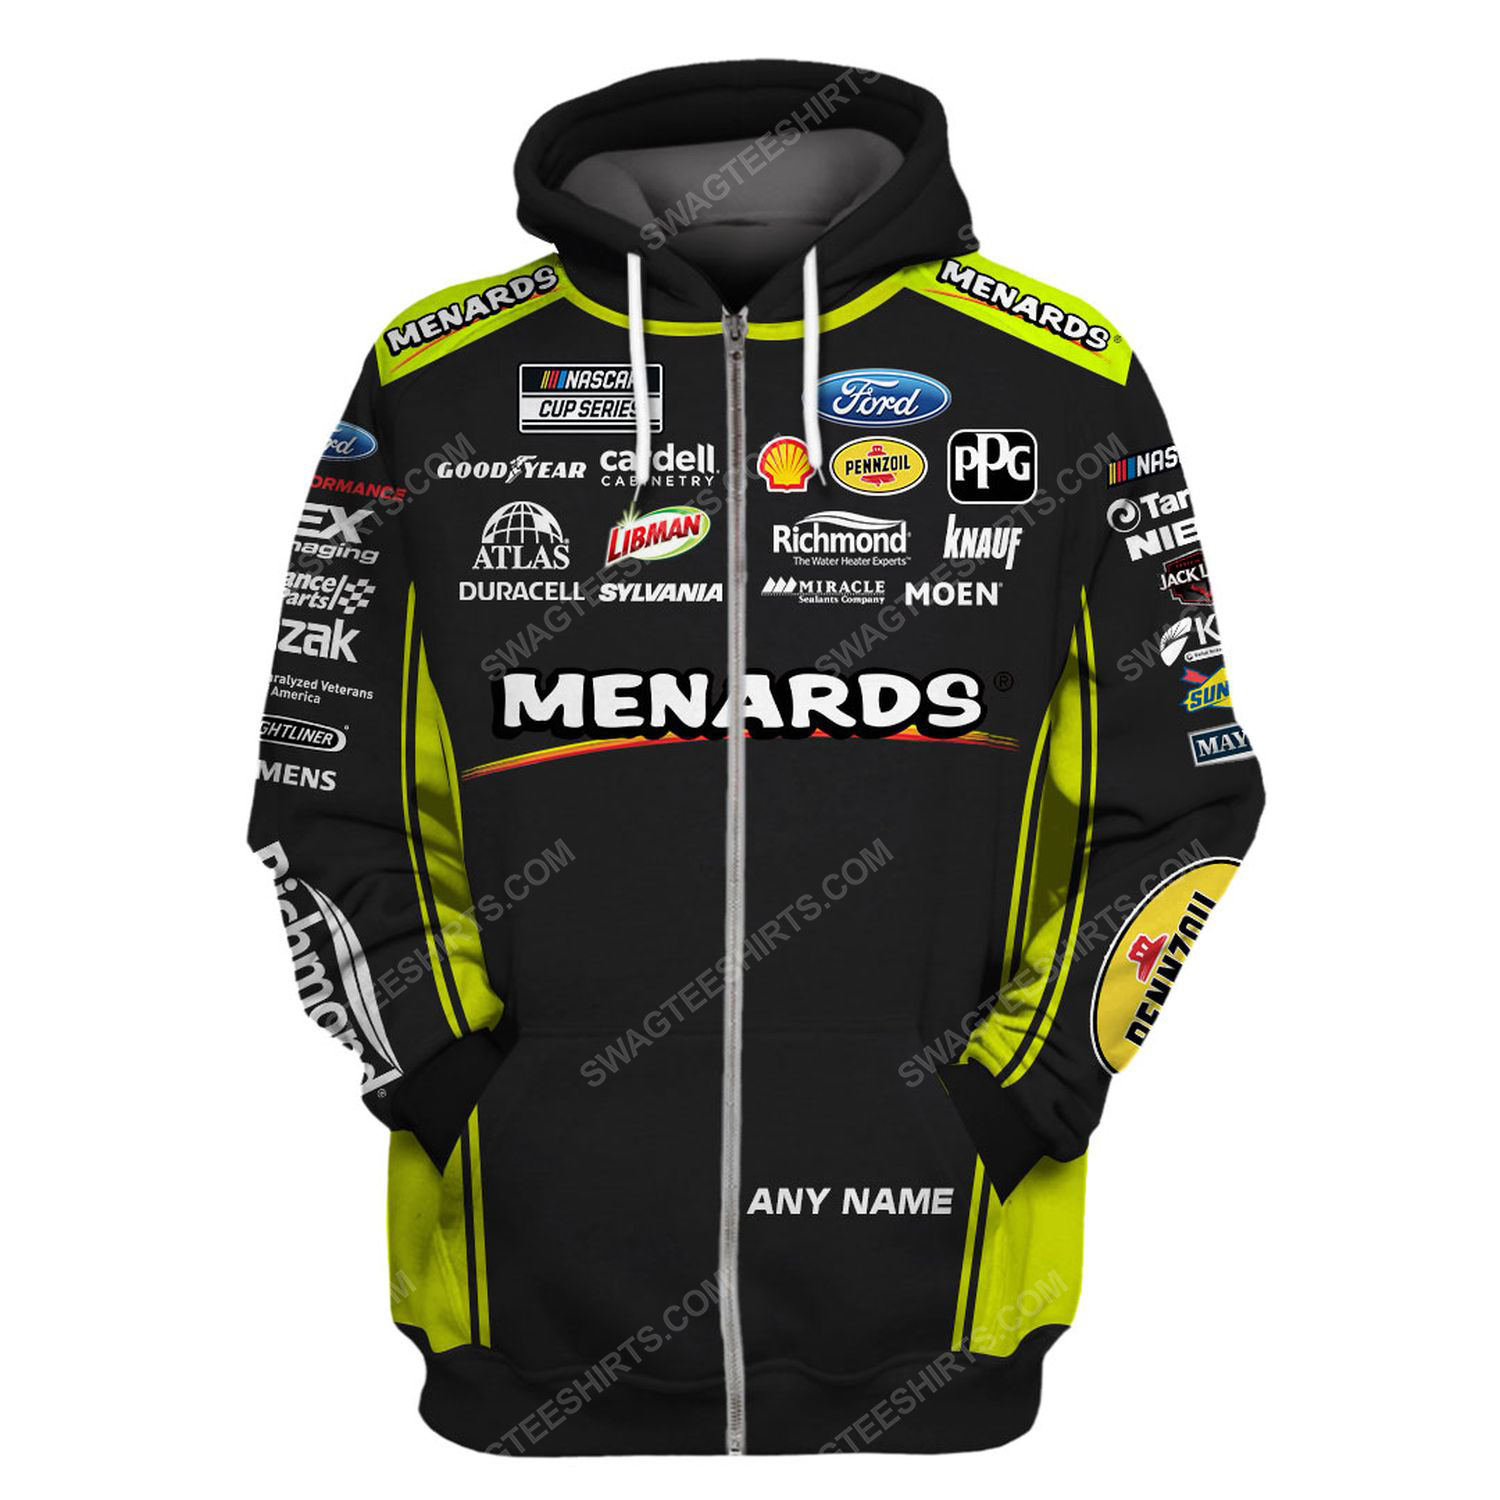 Custom arca menards series racing team motorsport full printing zip hoodie